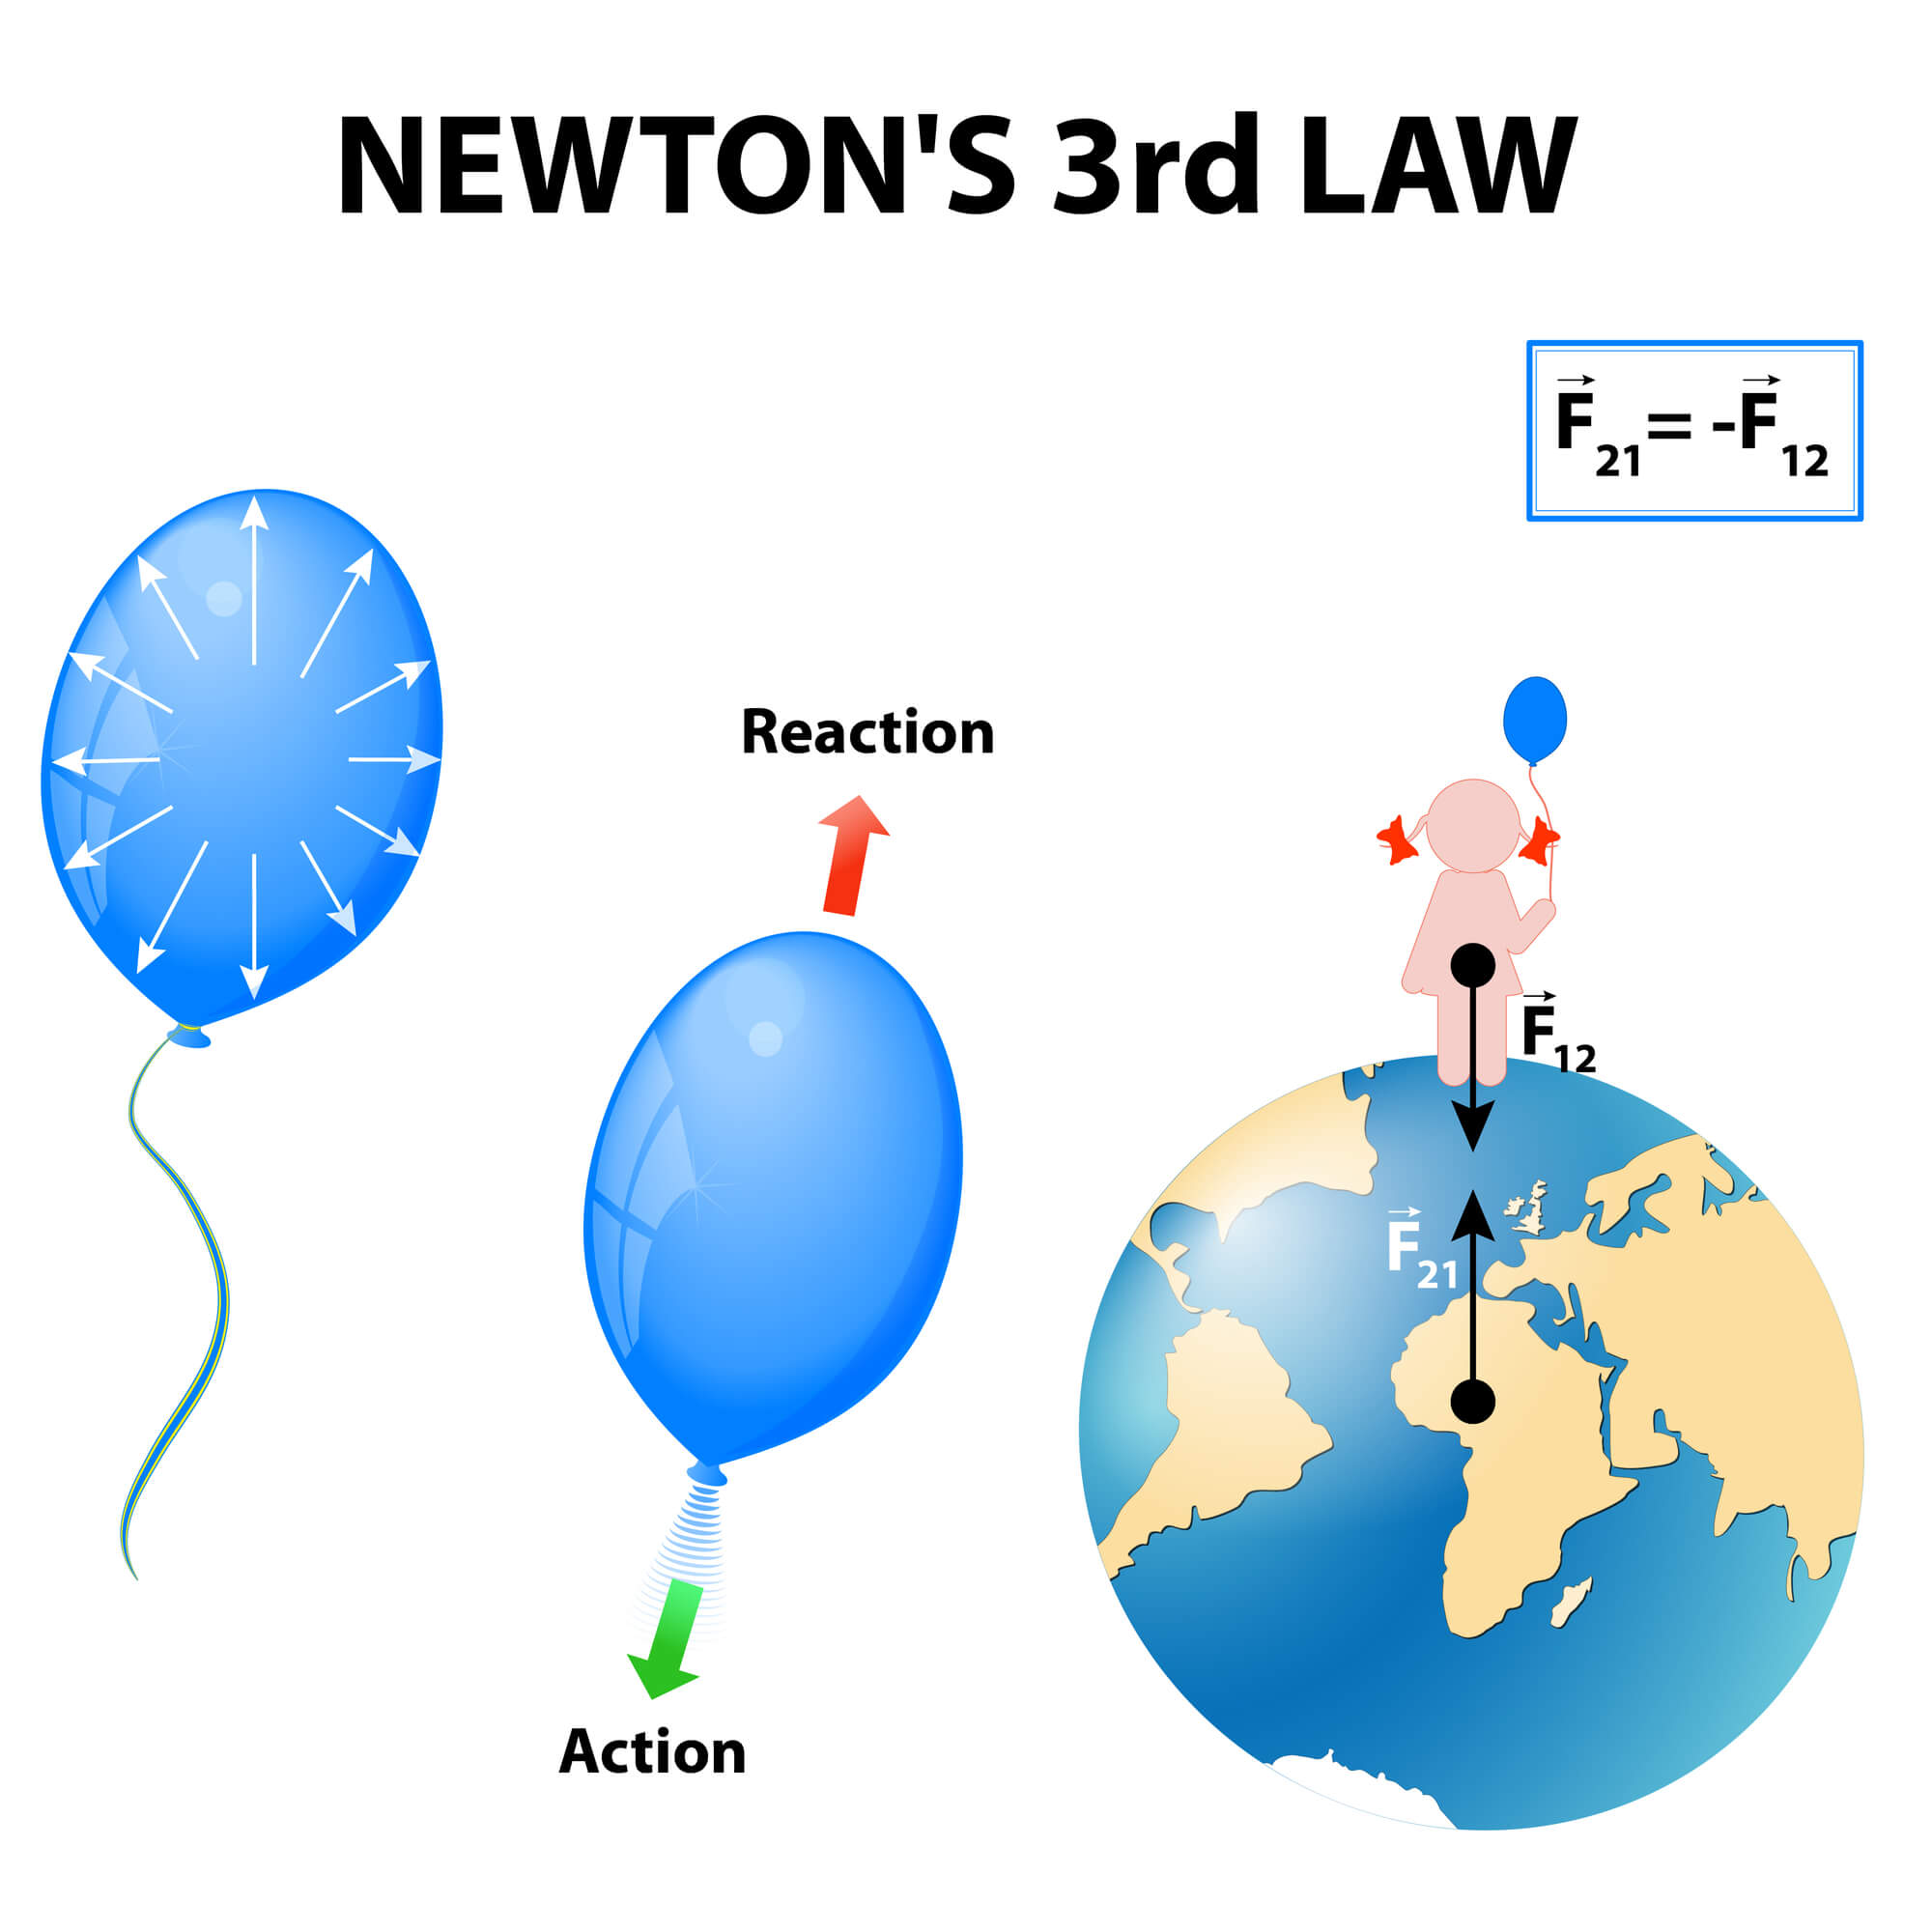 איור 2: החוק השלישי של ניוטון. <a href="https://depositphotos.com. ">המחשה: depositphotos.com</a>